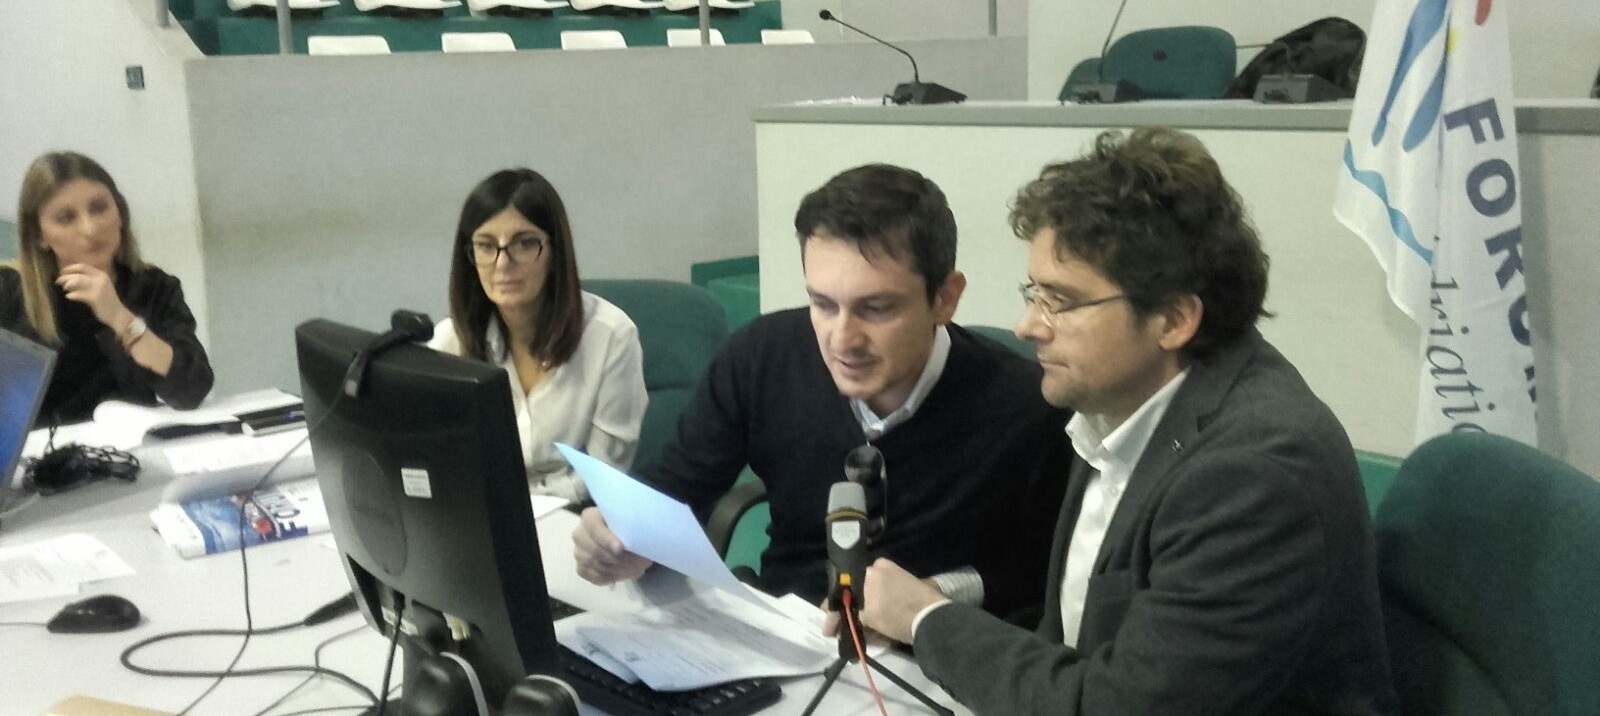 Forum delle città adriatico-ioniche, oggi la riunione del consiglio direttivo ad Ancona